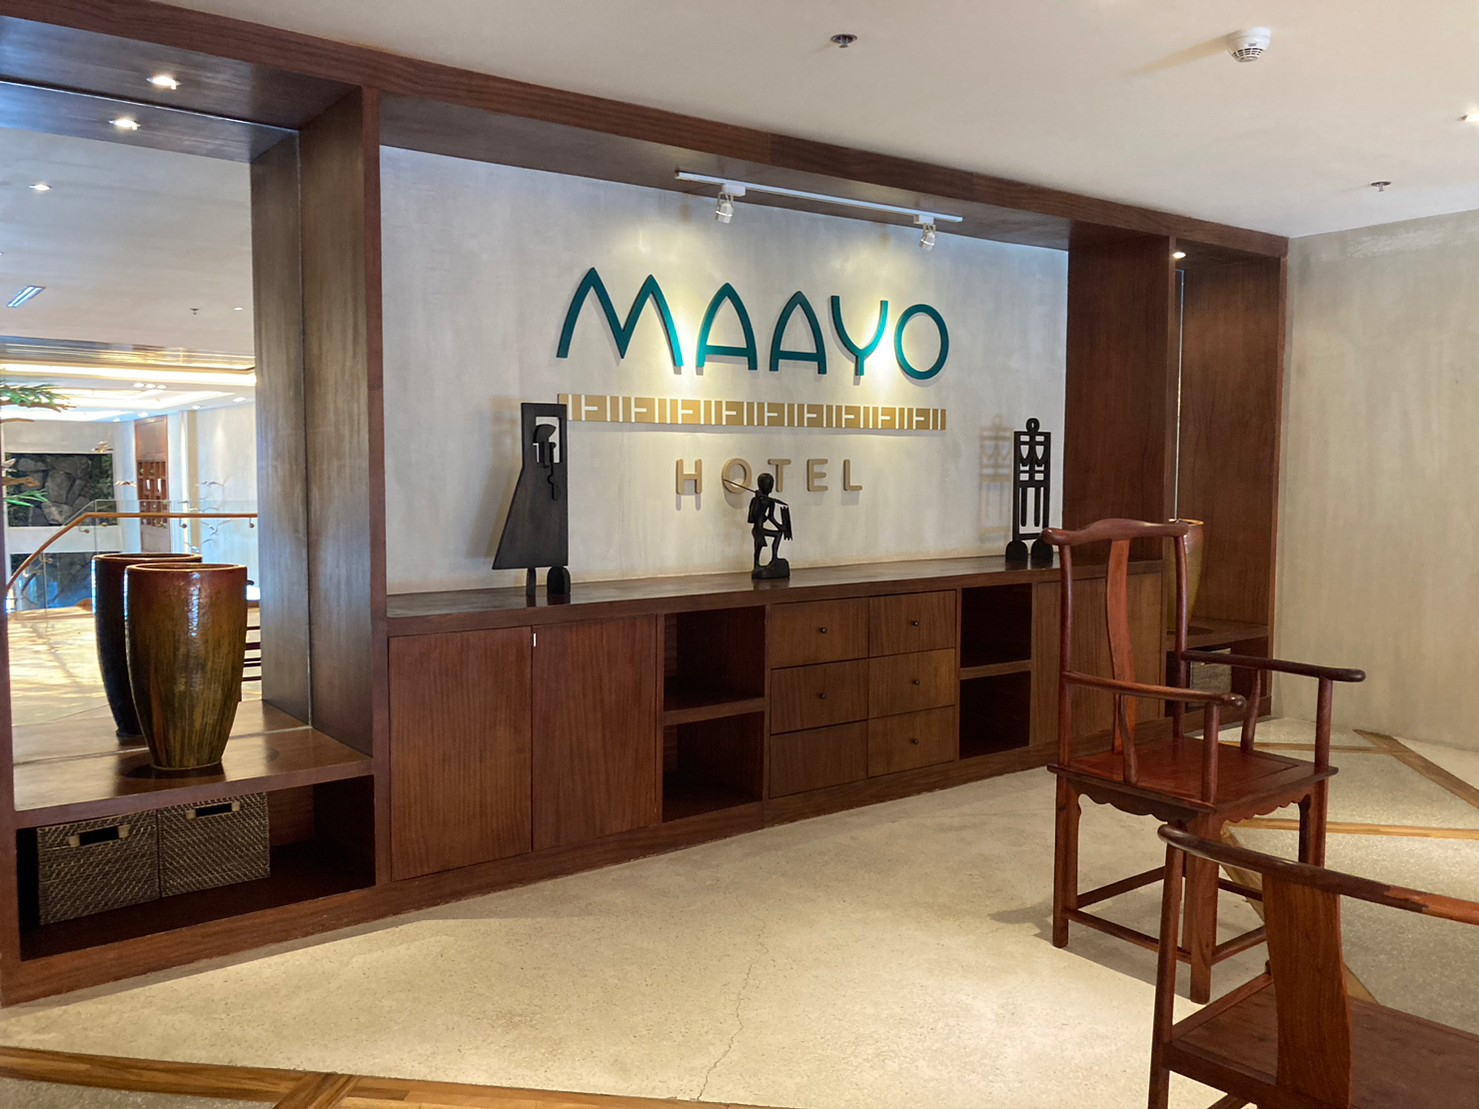 2023年5月にMaayo Hotel及び隣接ビルNarthparkビル７Fに移転